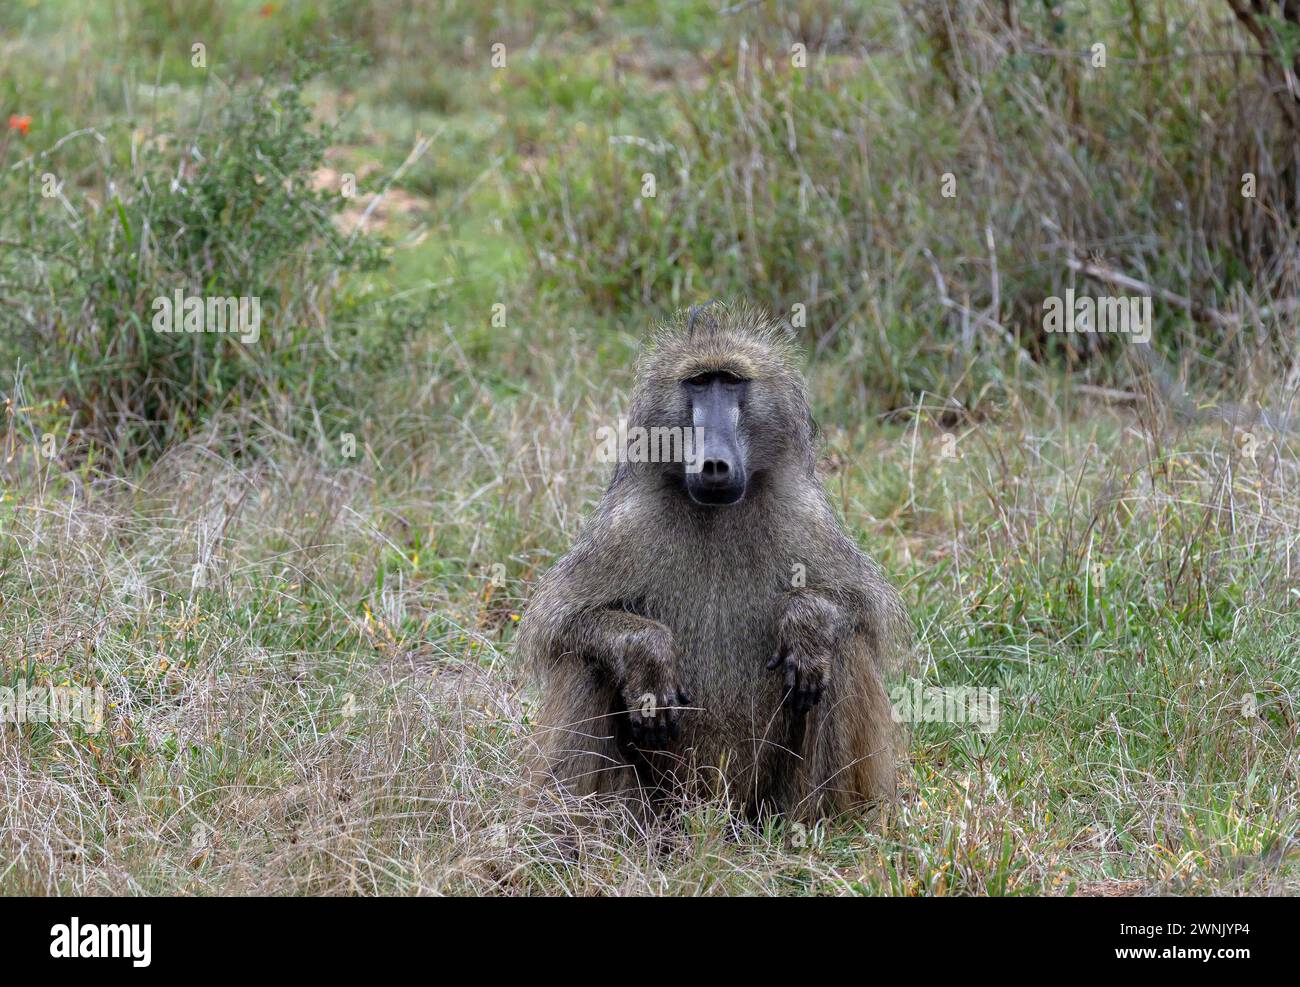 Safari a savannah. Babbuino Chacma nel Parco Nazionale di Kruger, Sud Africa. Una scimmia si siede nell'erba e guarda la macchina fotografica. Habitat naturale degli animali, wildli Foto Stock